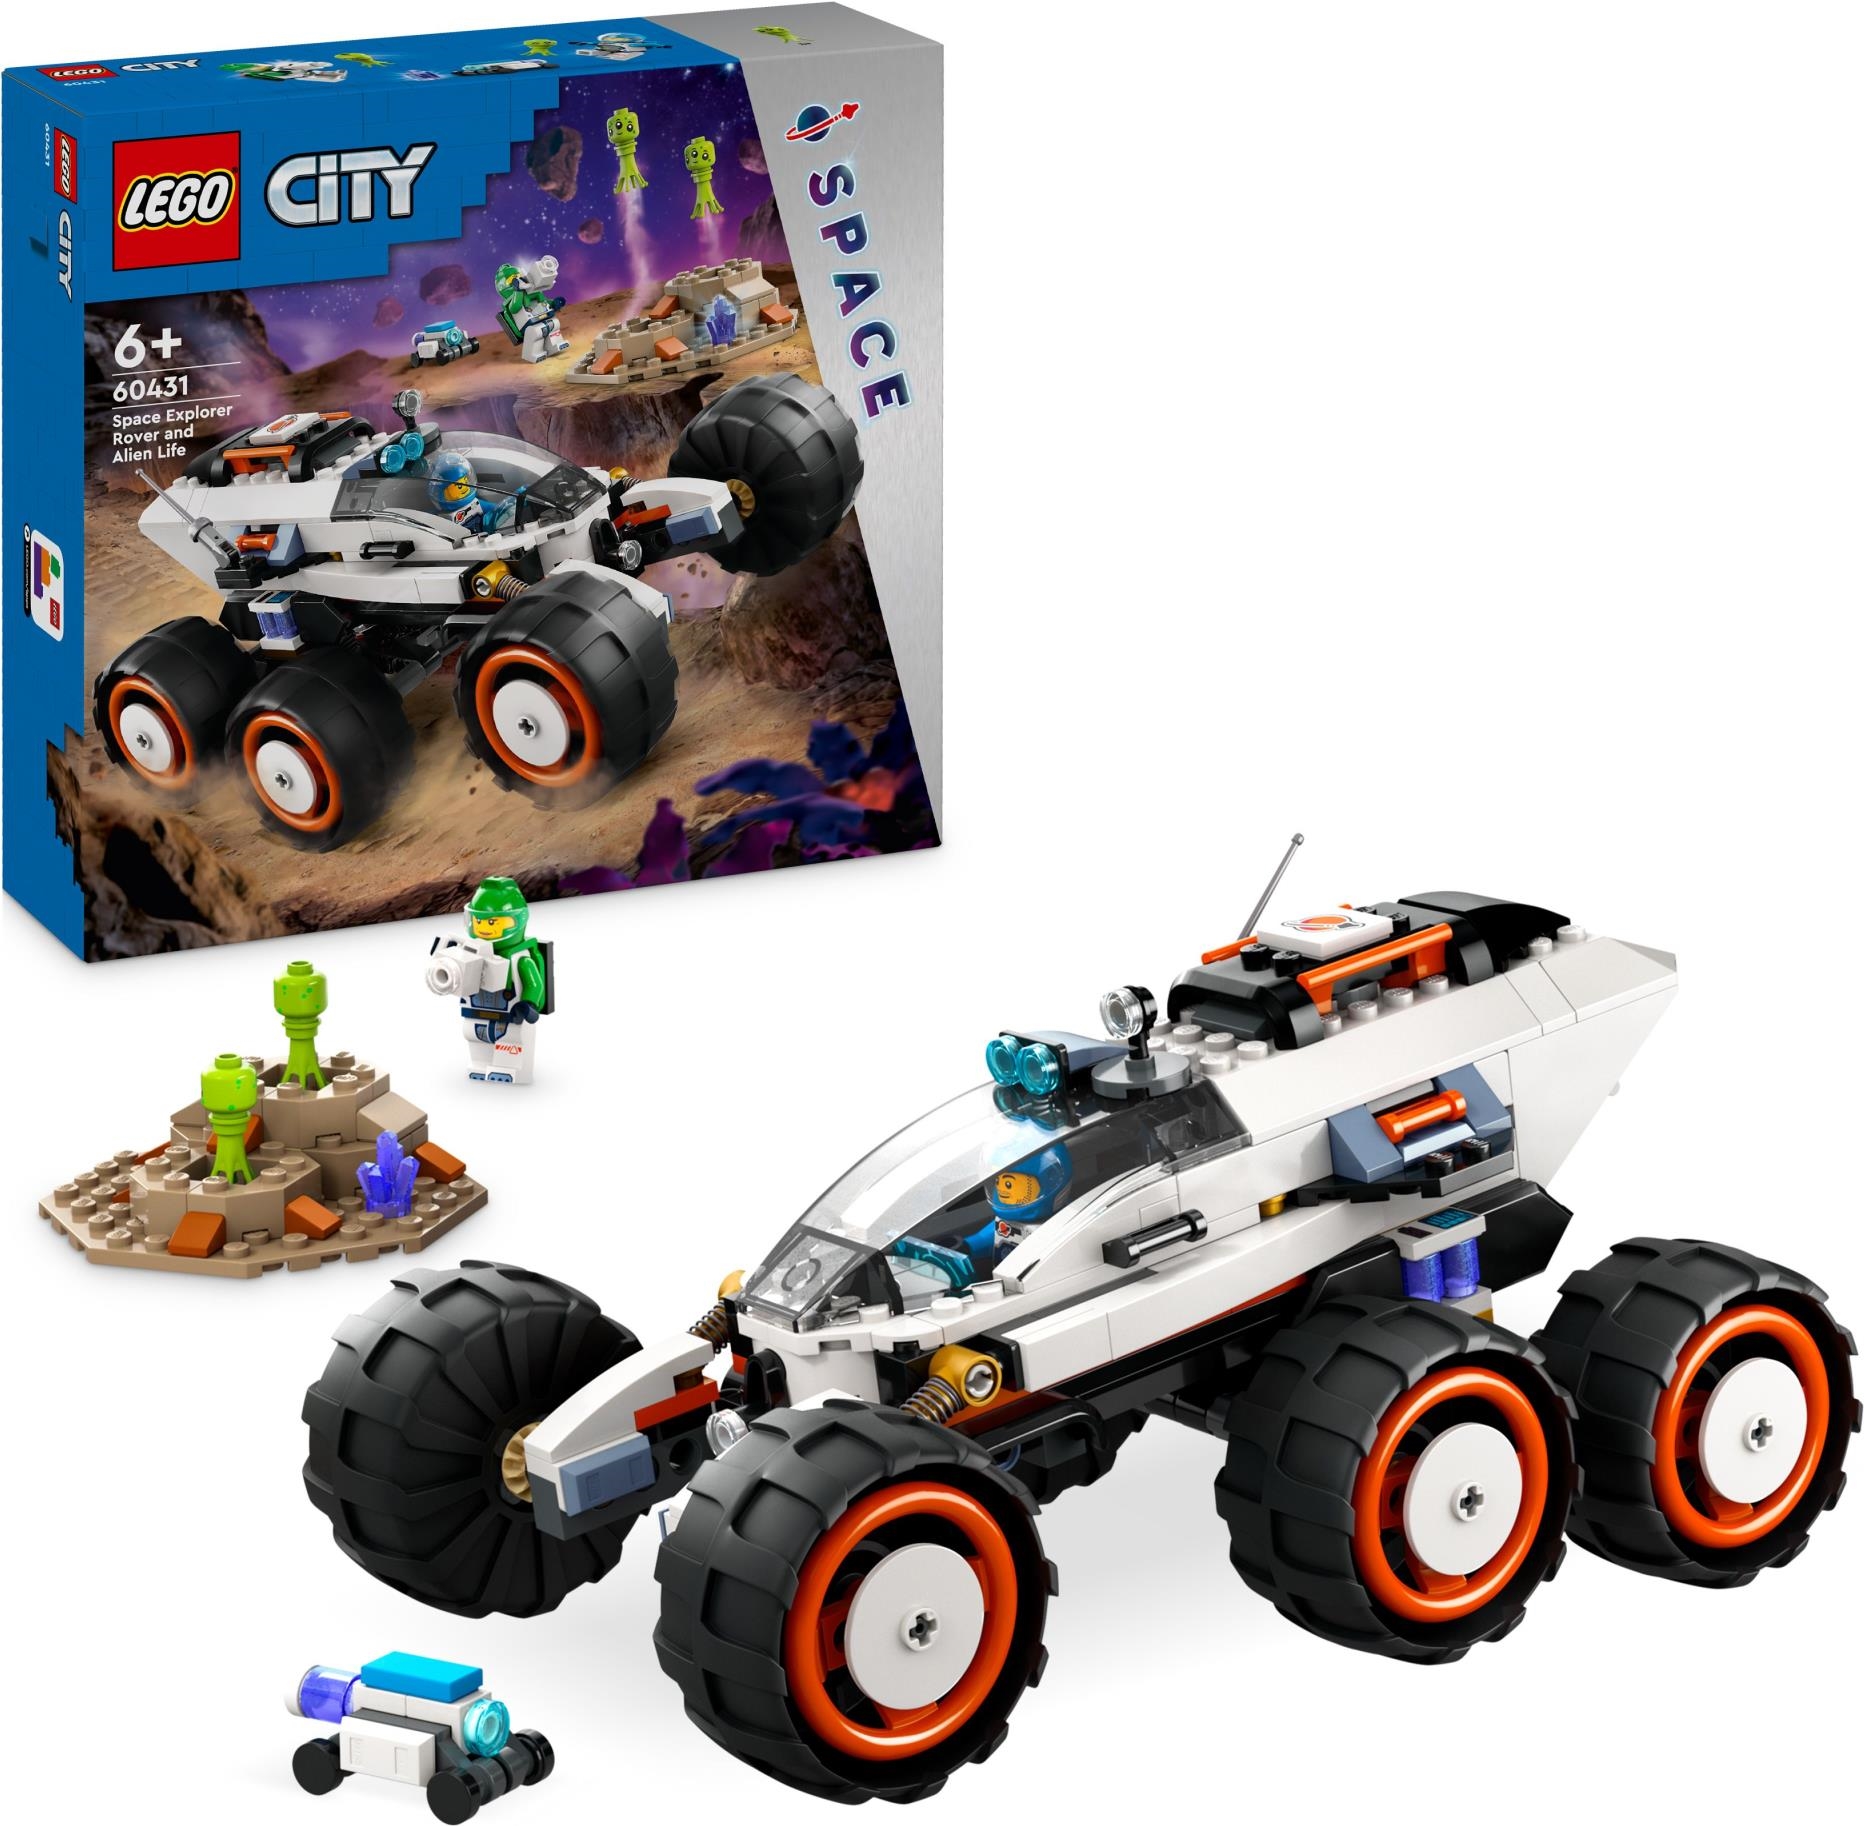 Lego: 60431 - City Space - Rover Esploratore Spaziale E Vita Aliena